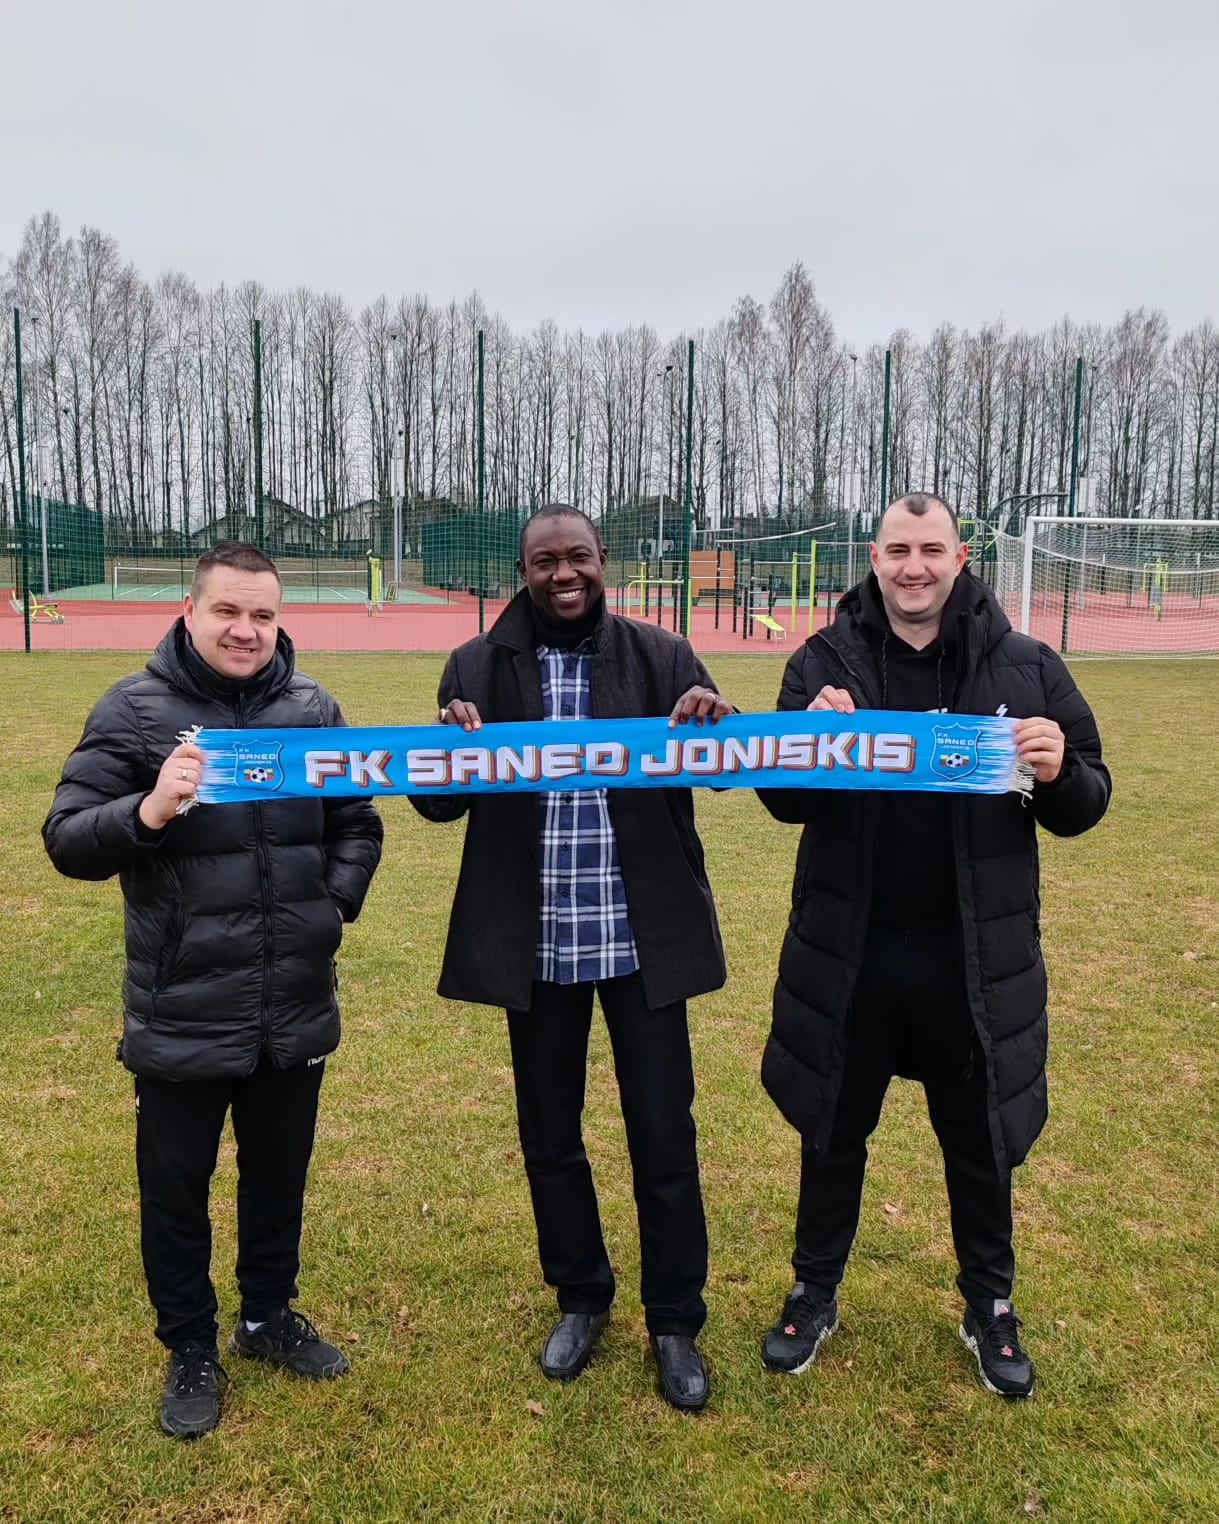 Katsina United Management Explores Partnership Prospects in Lithuania